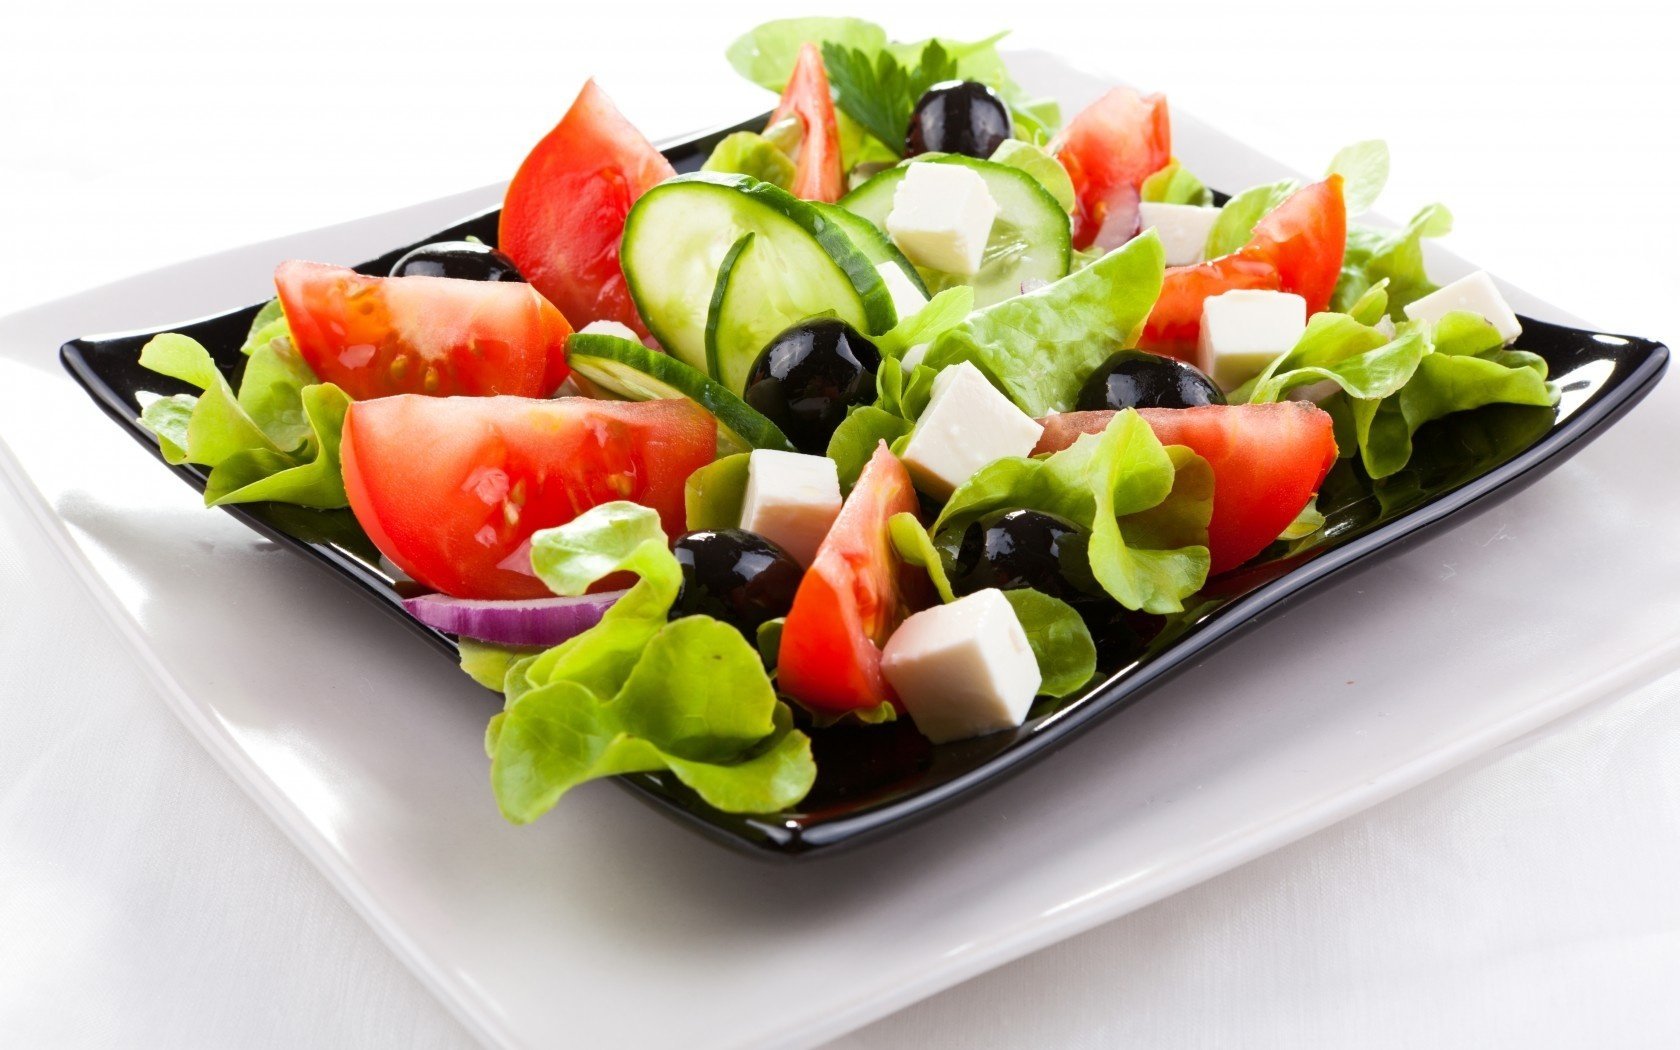 Греческий салат в чёрной тарелке на белой тарелке